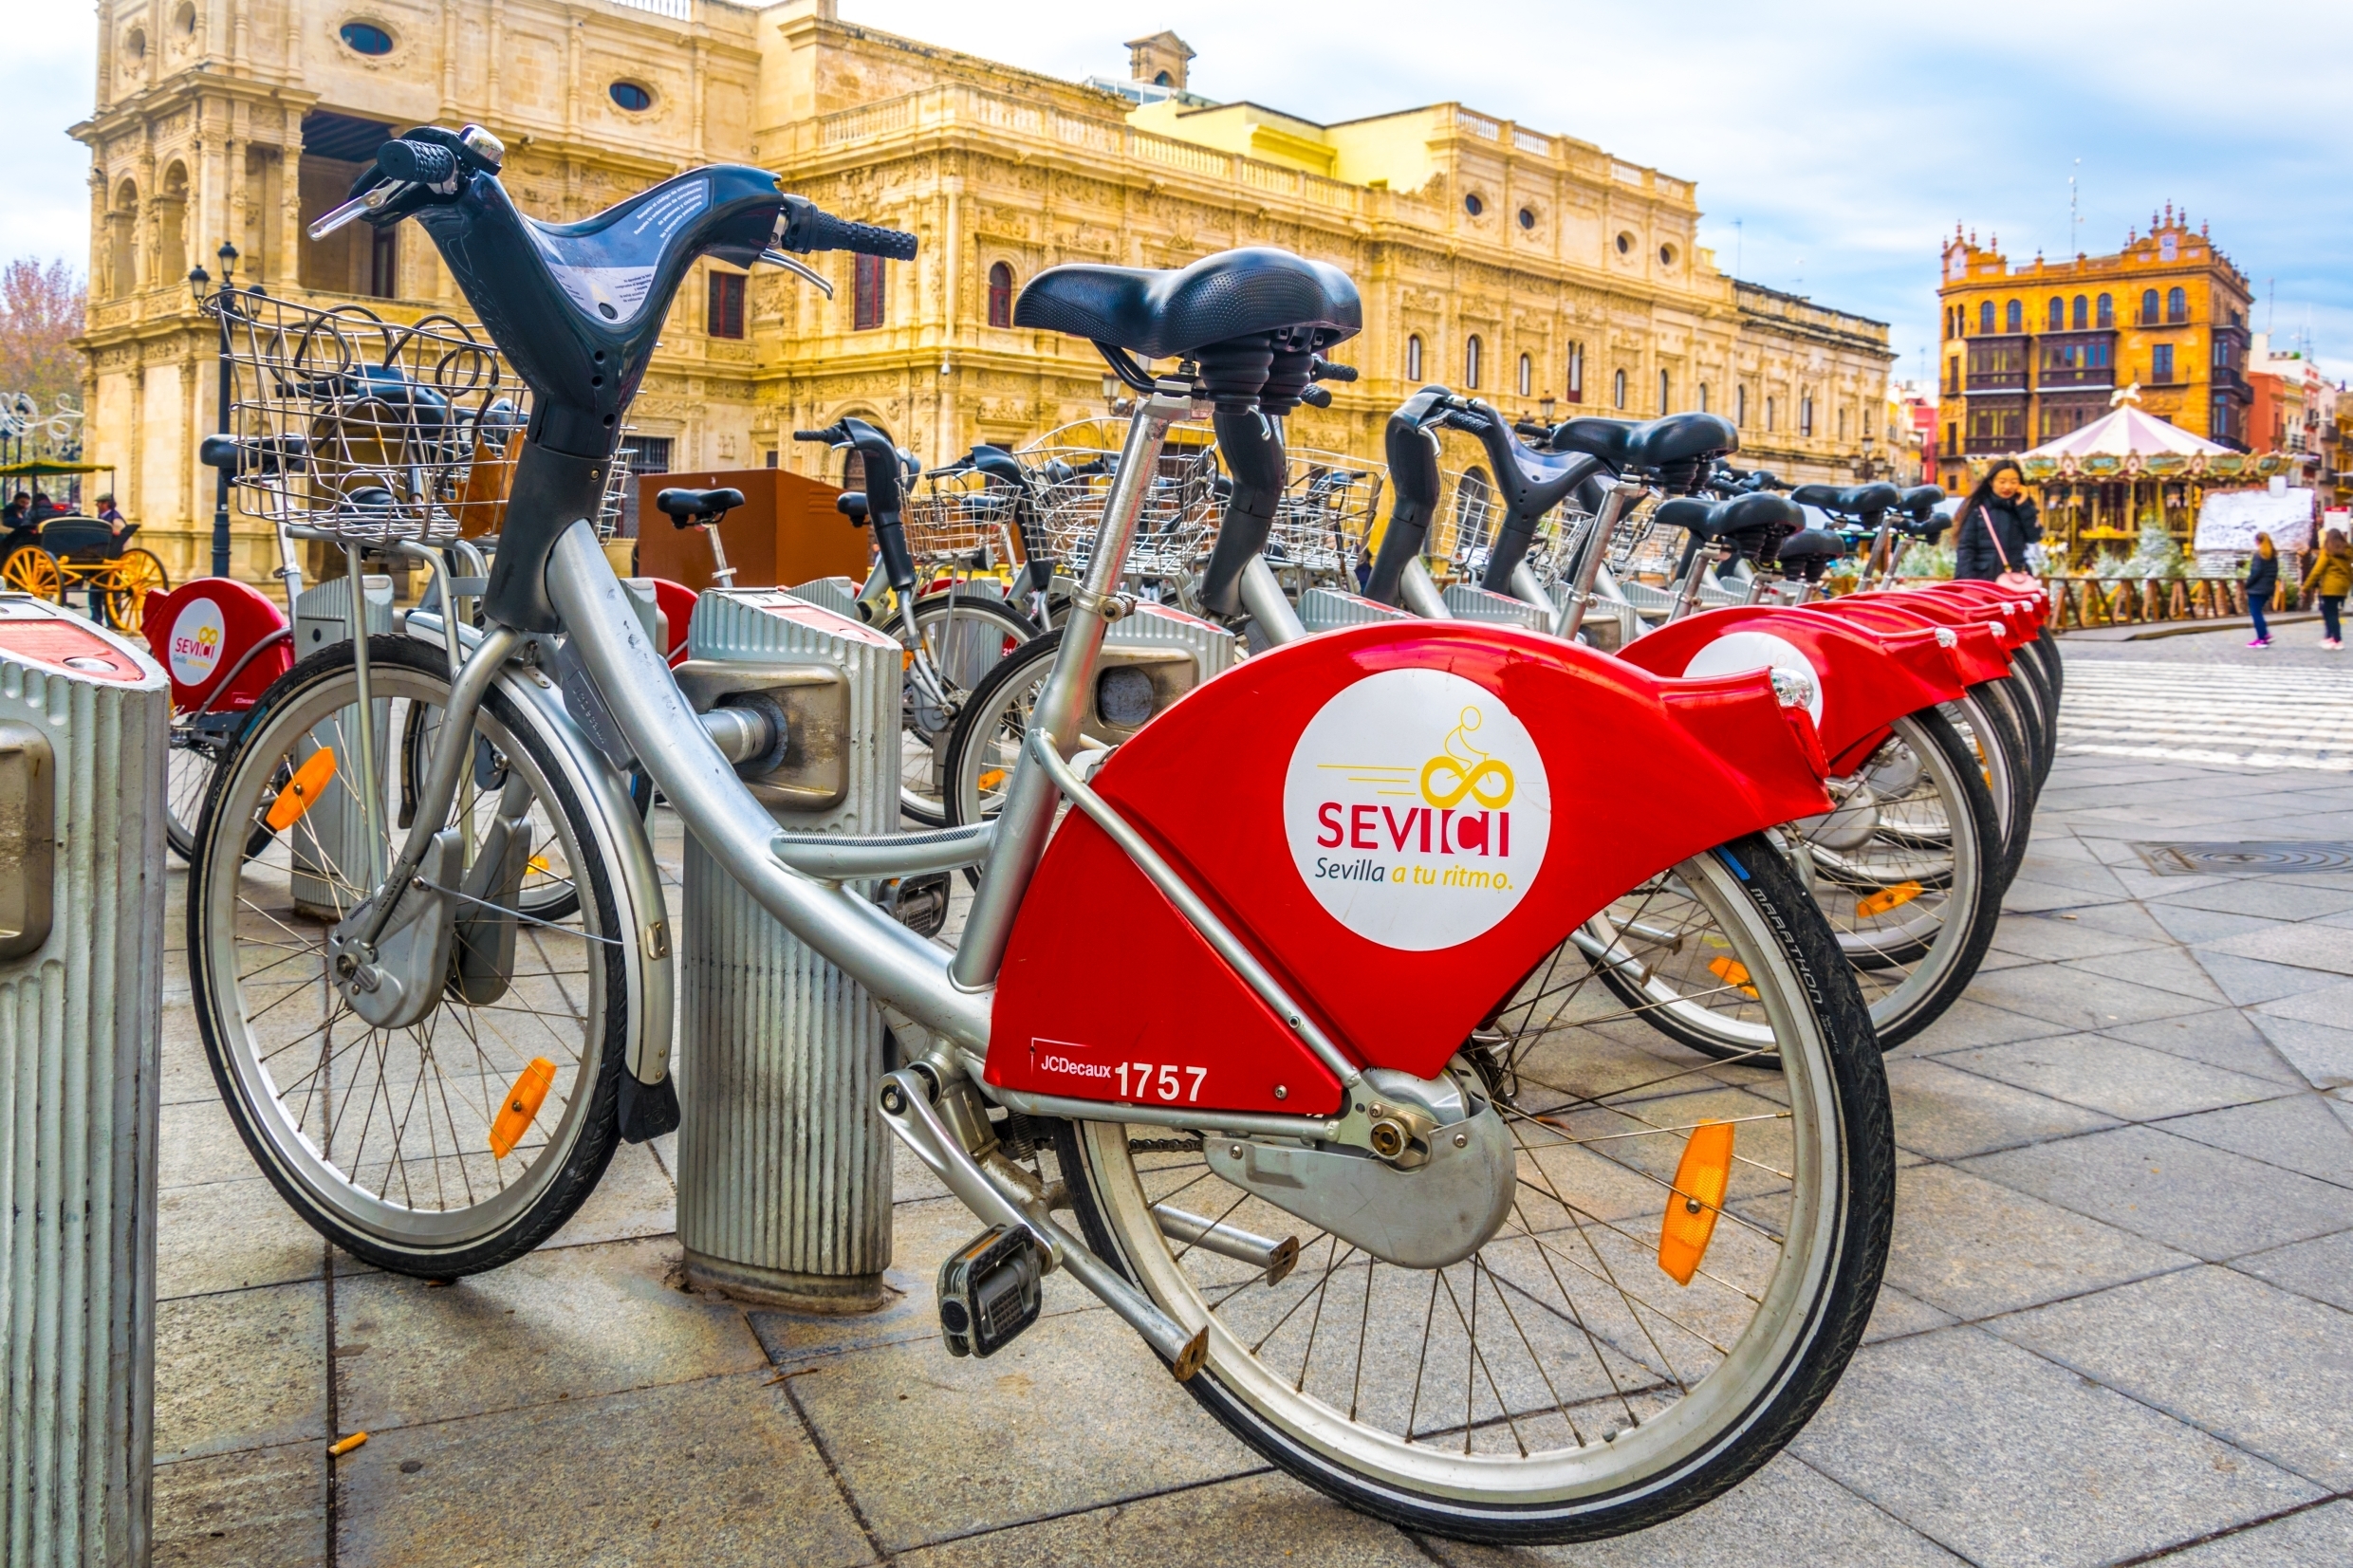 Consejos y lugares para aparcar la bici en Sevilla - Blog Ciclogreen